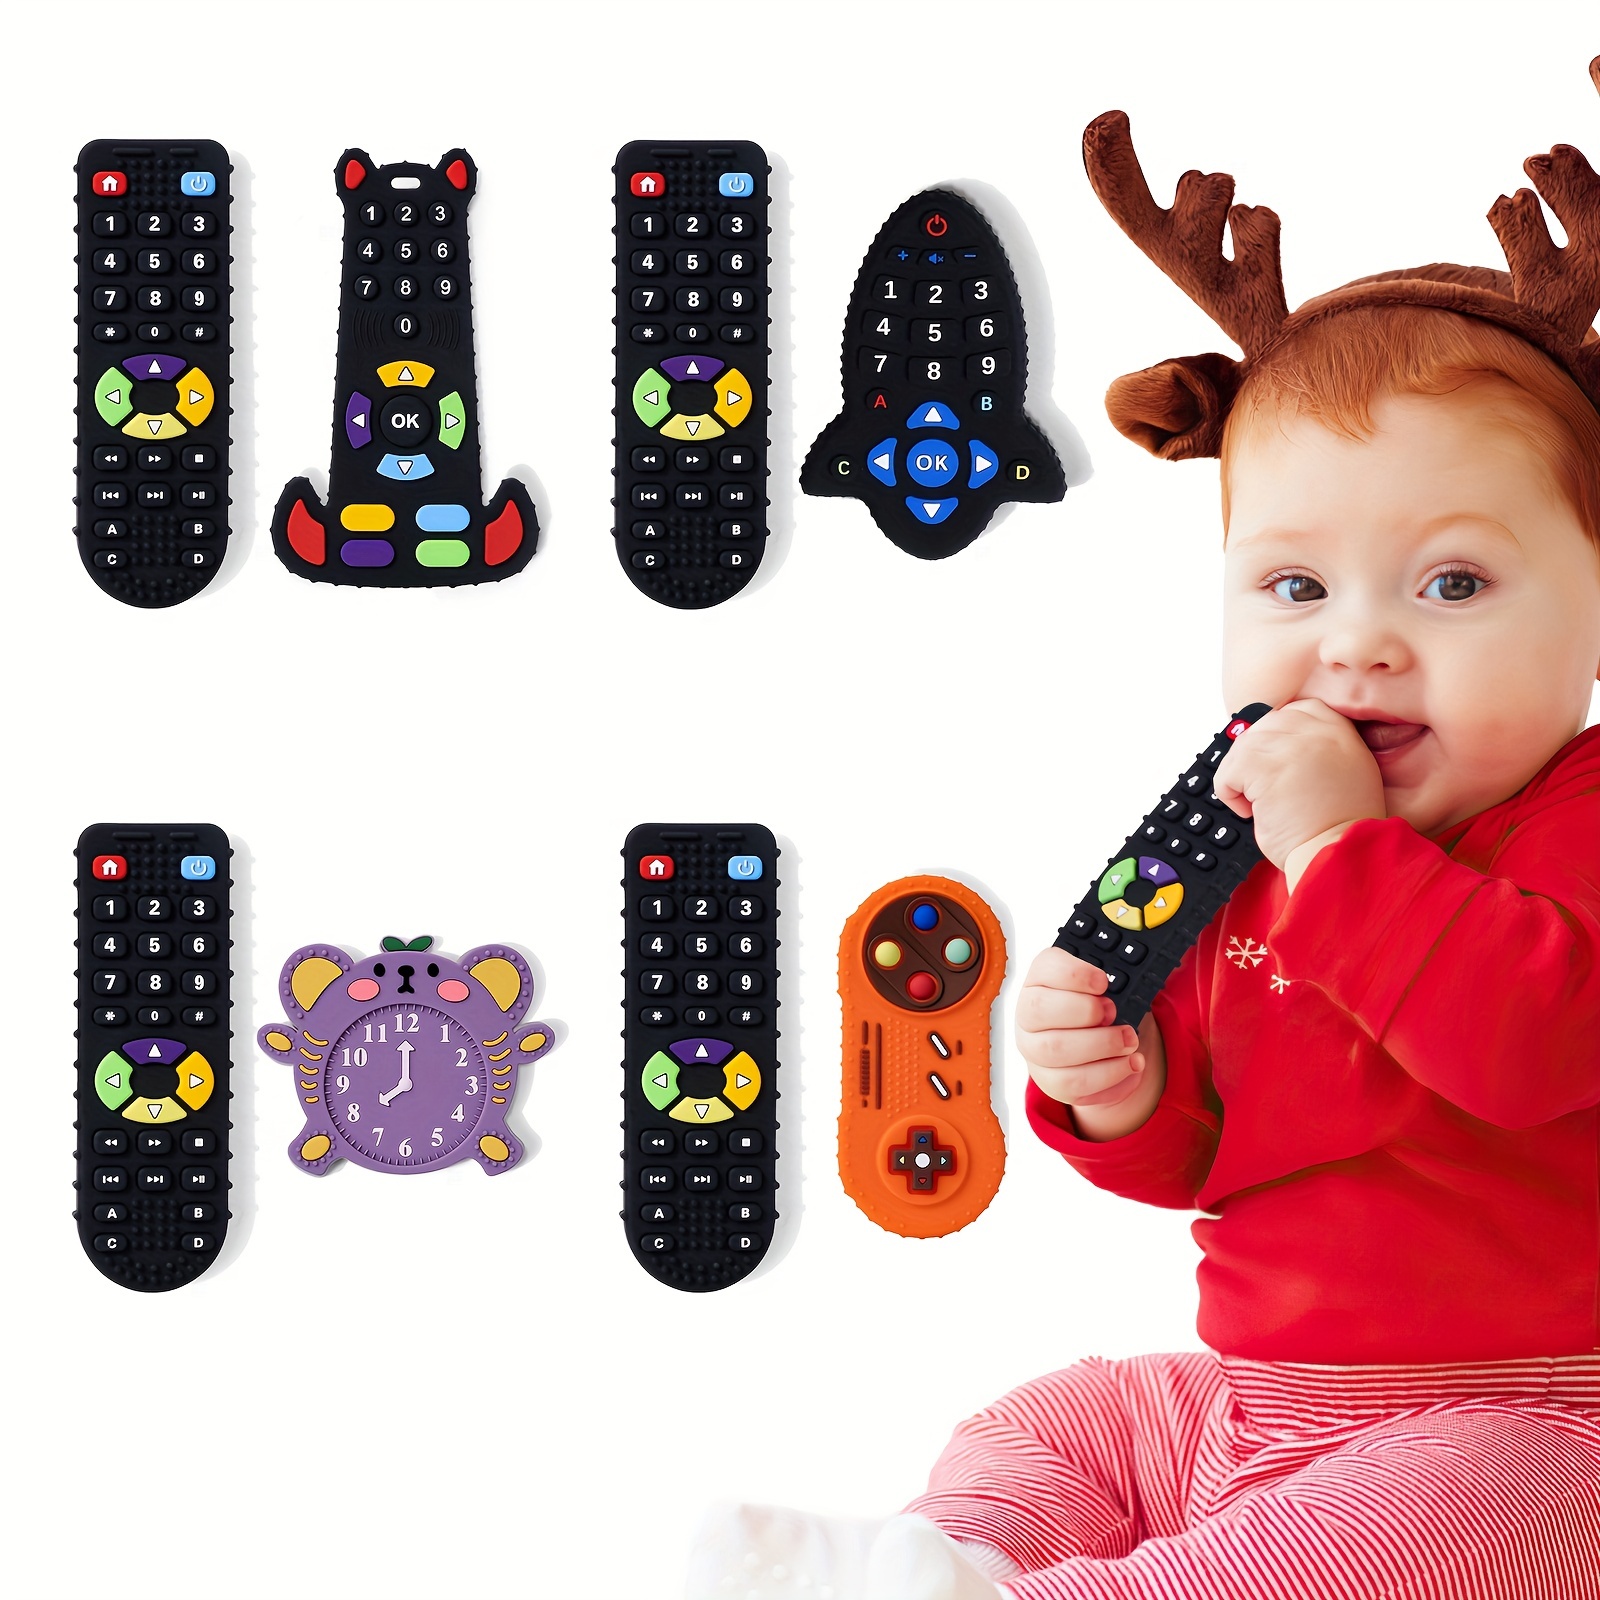 Regalo Educativo Temprano Tv Control Remoto Juguete Bebé 6 Meses